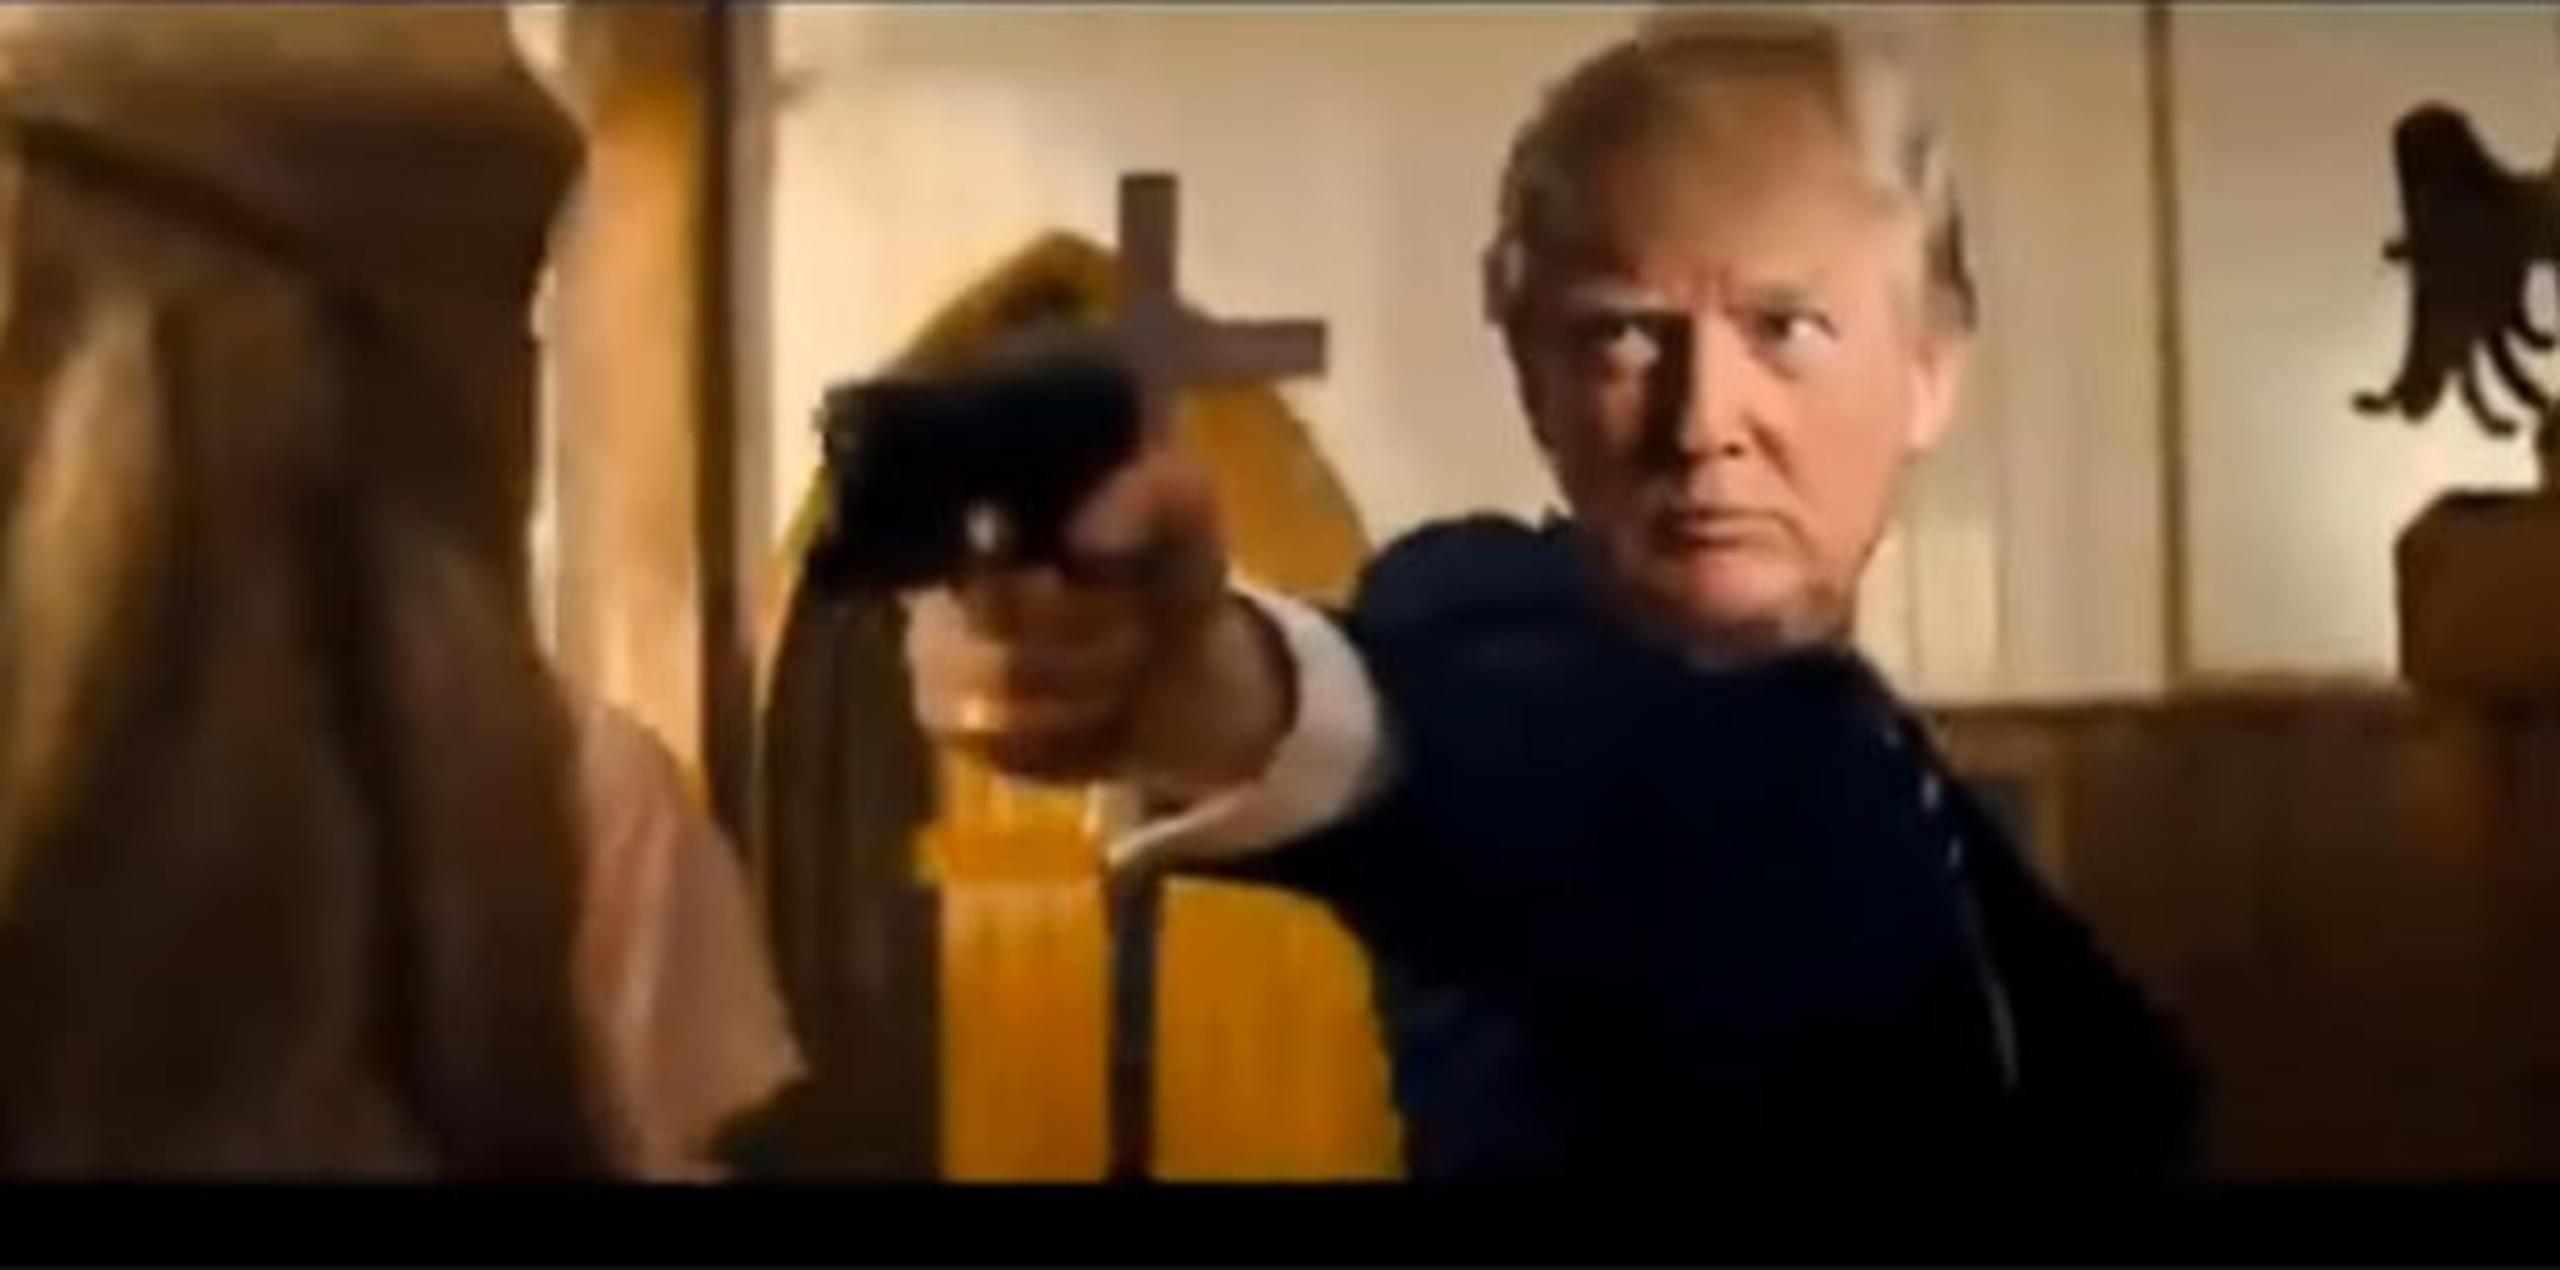 El rostro de Trump está superpuesto sobre el del supuesto asesino. (Captura)